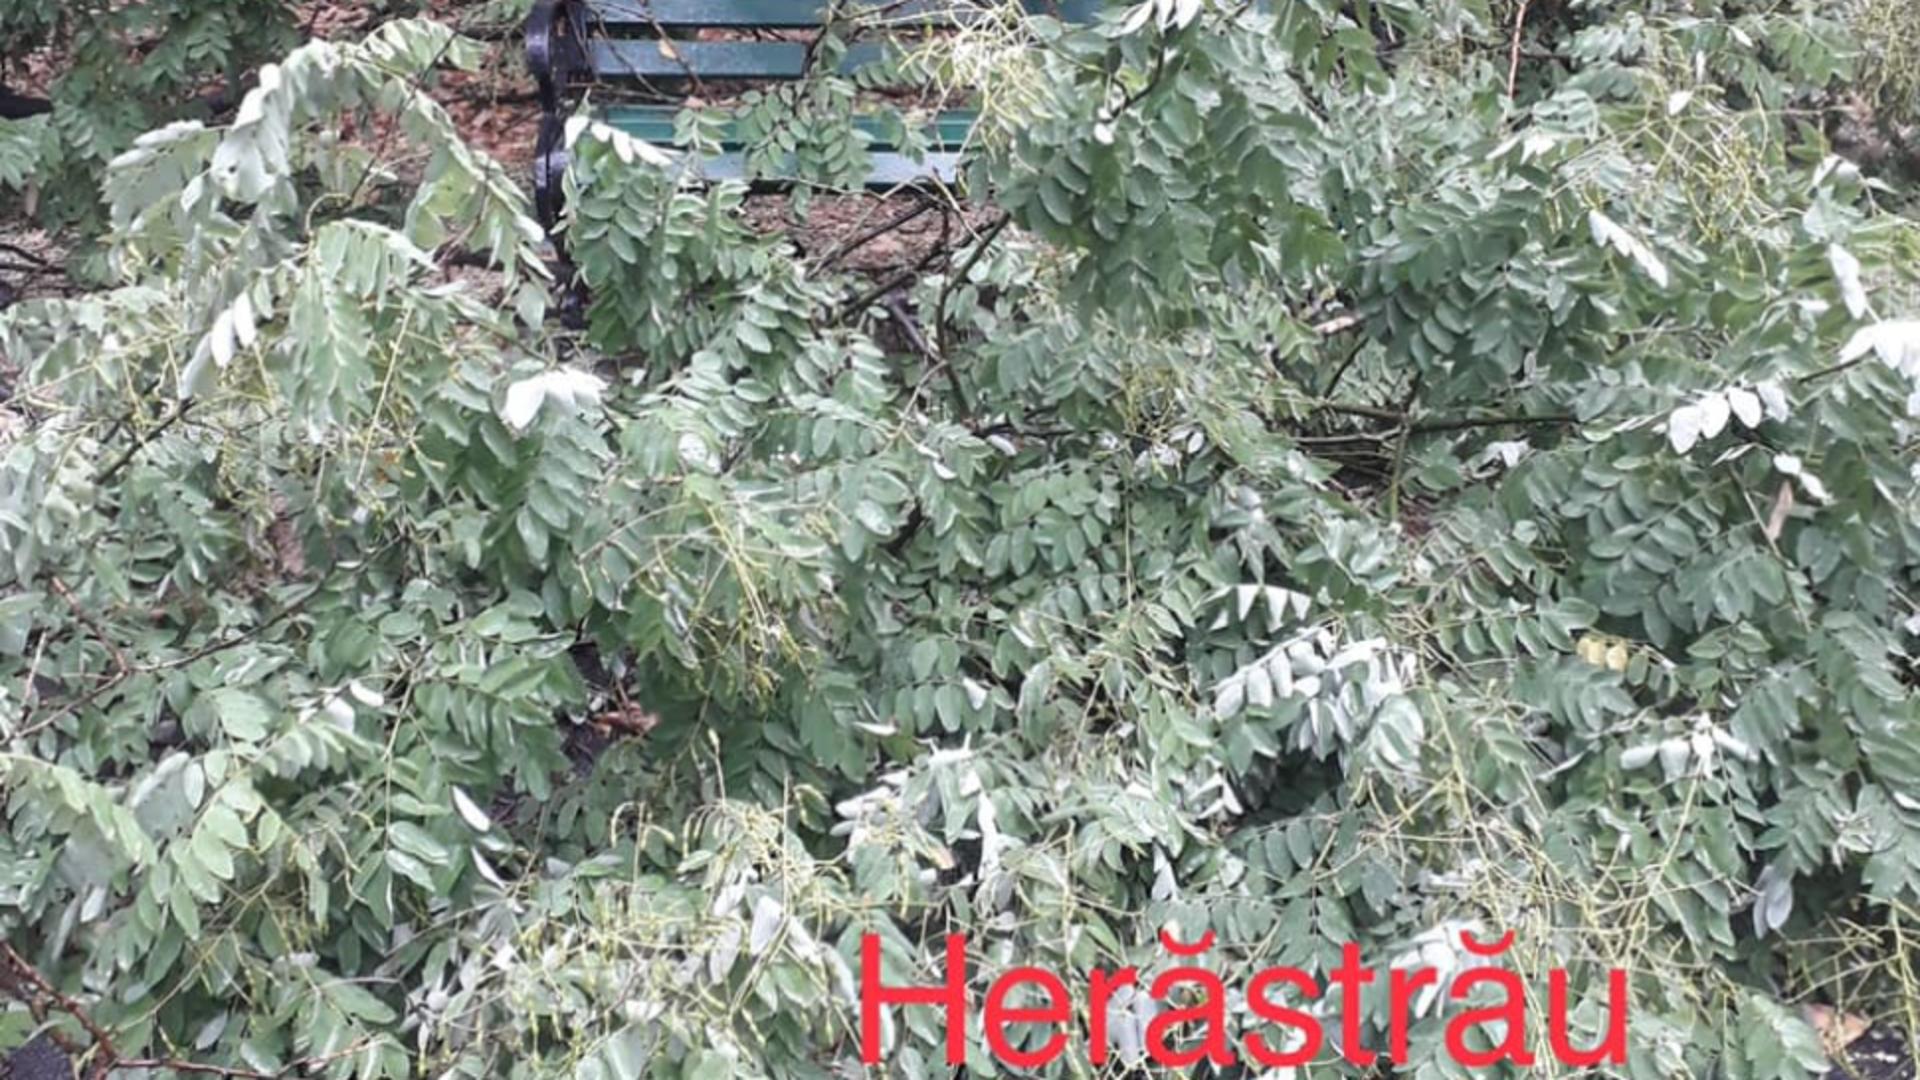 Copaci căzuți Herăstră și Floreasca/ Facebook Compania Municipală Parcuri și Grădini București S.A.